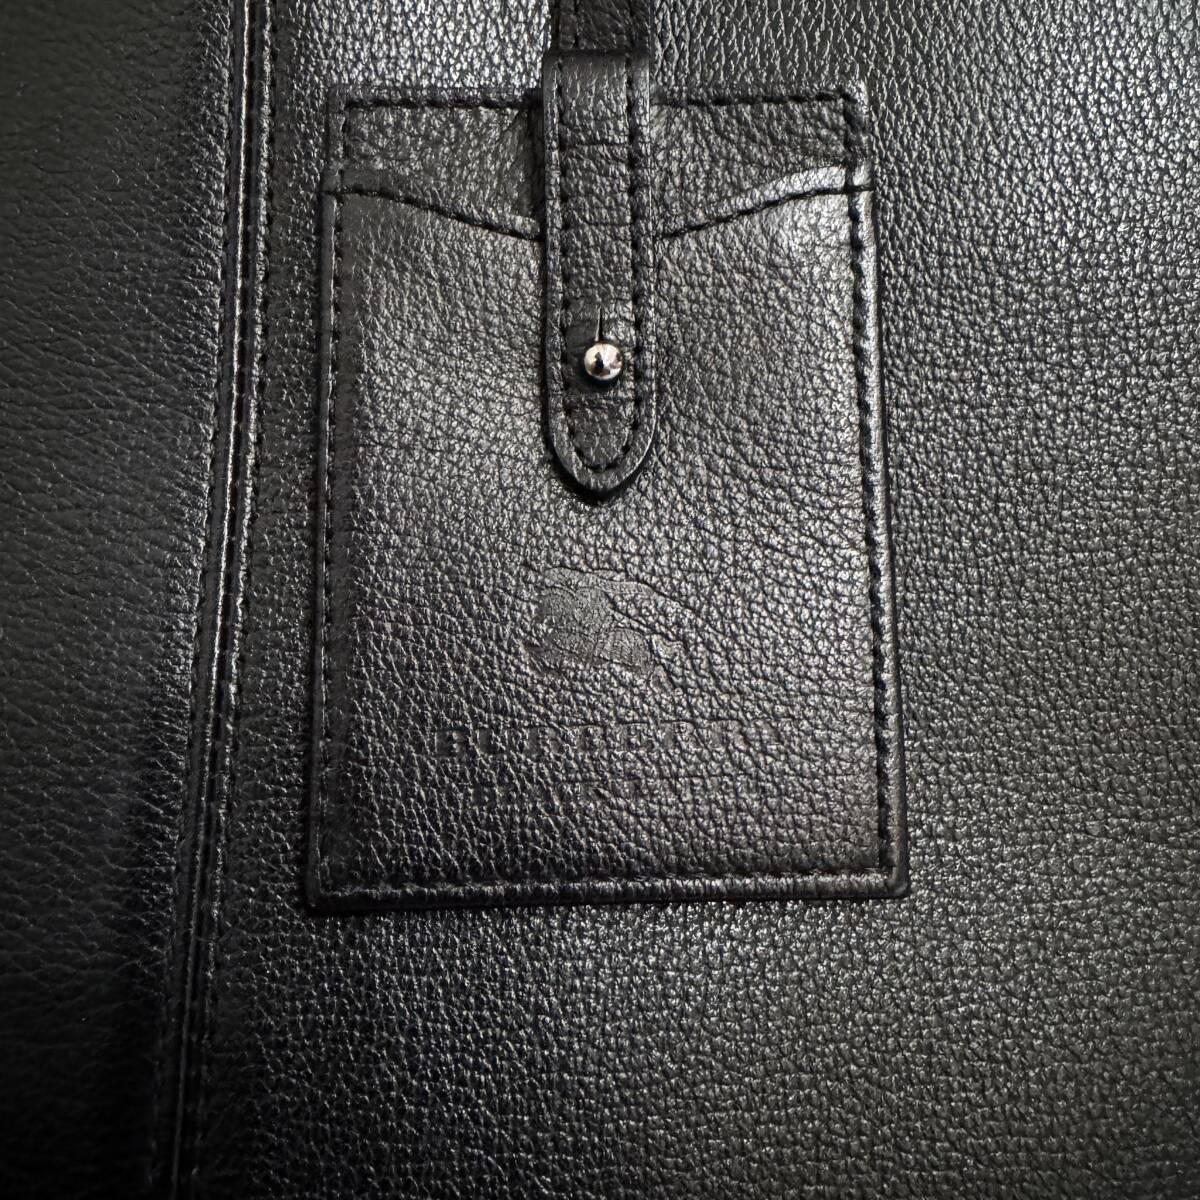  прекрасный товар BURBERRY BLACK LABEL Burberry Black Label 2WAY портфель портфель все кожа натуральная кожа чёрный #2746